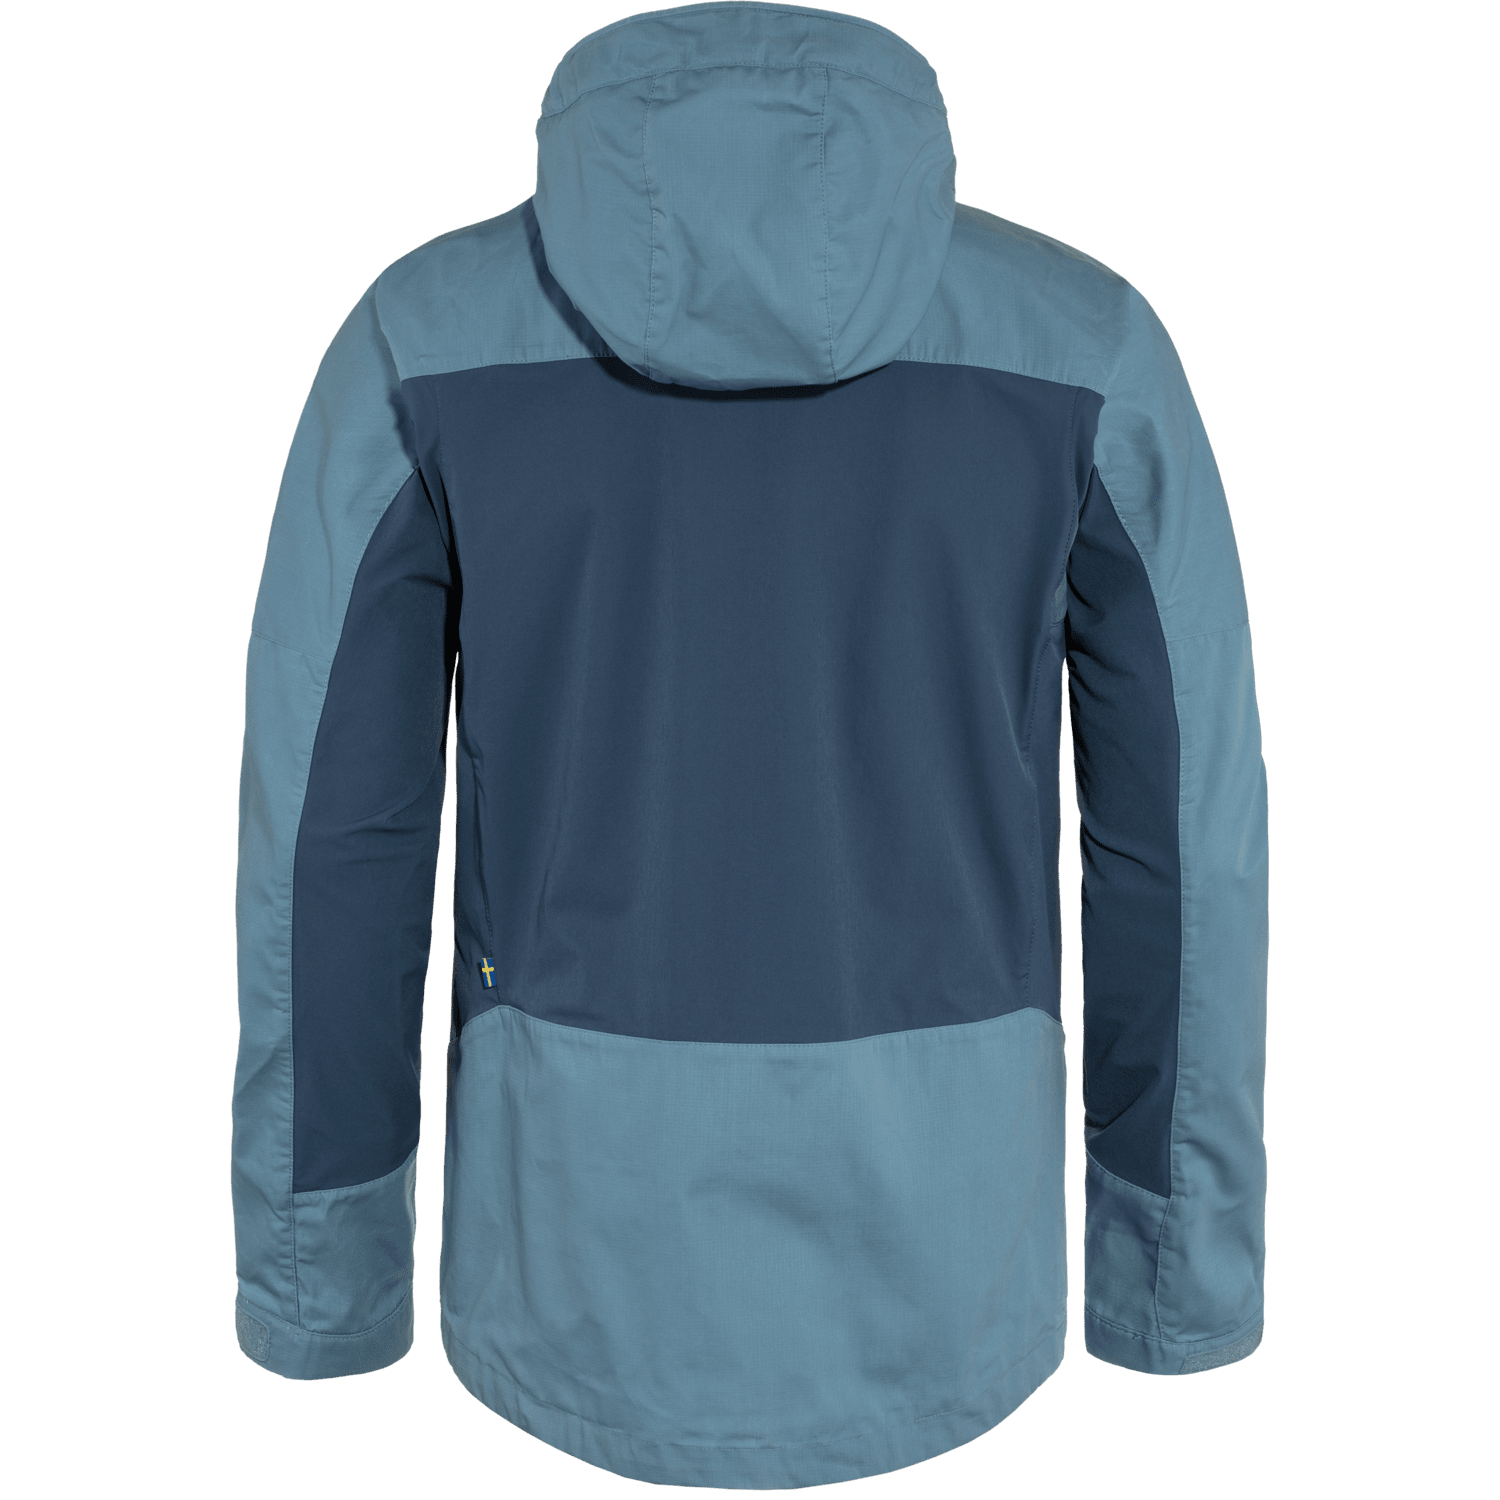 Fjällräven M's Abisko Lite Trekking Jacket - G-1000® Lite Eco - Recycled PET & Organic cotton Dawn Blue-Indigo Blue Jacket